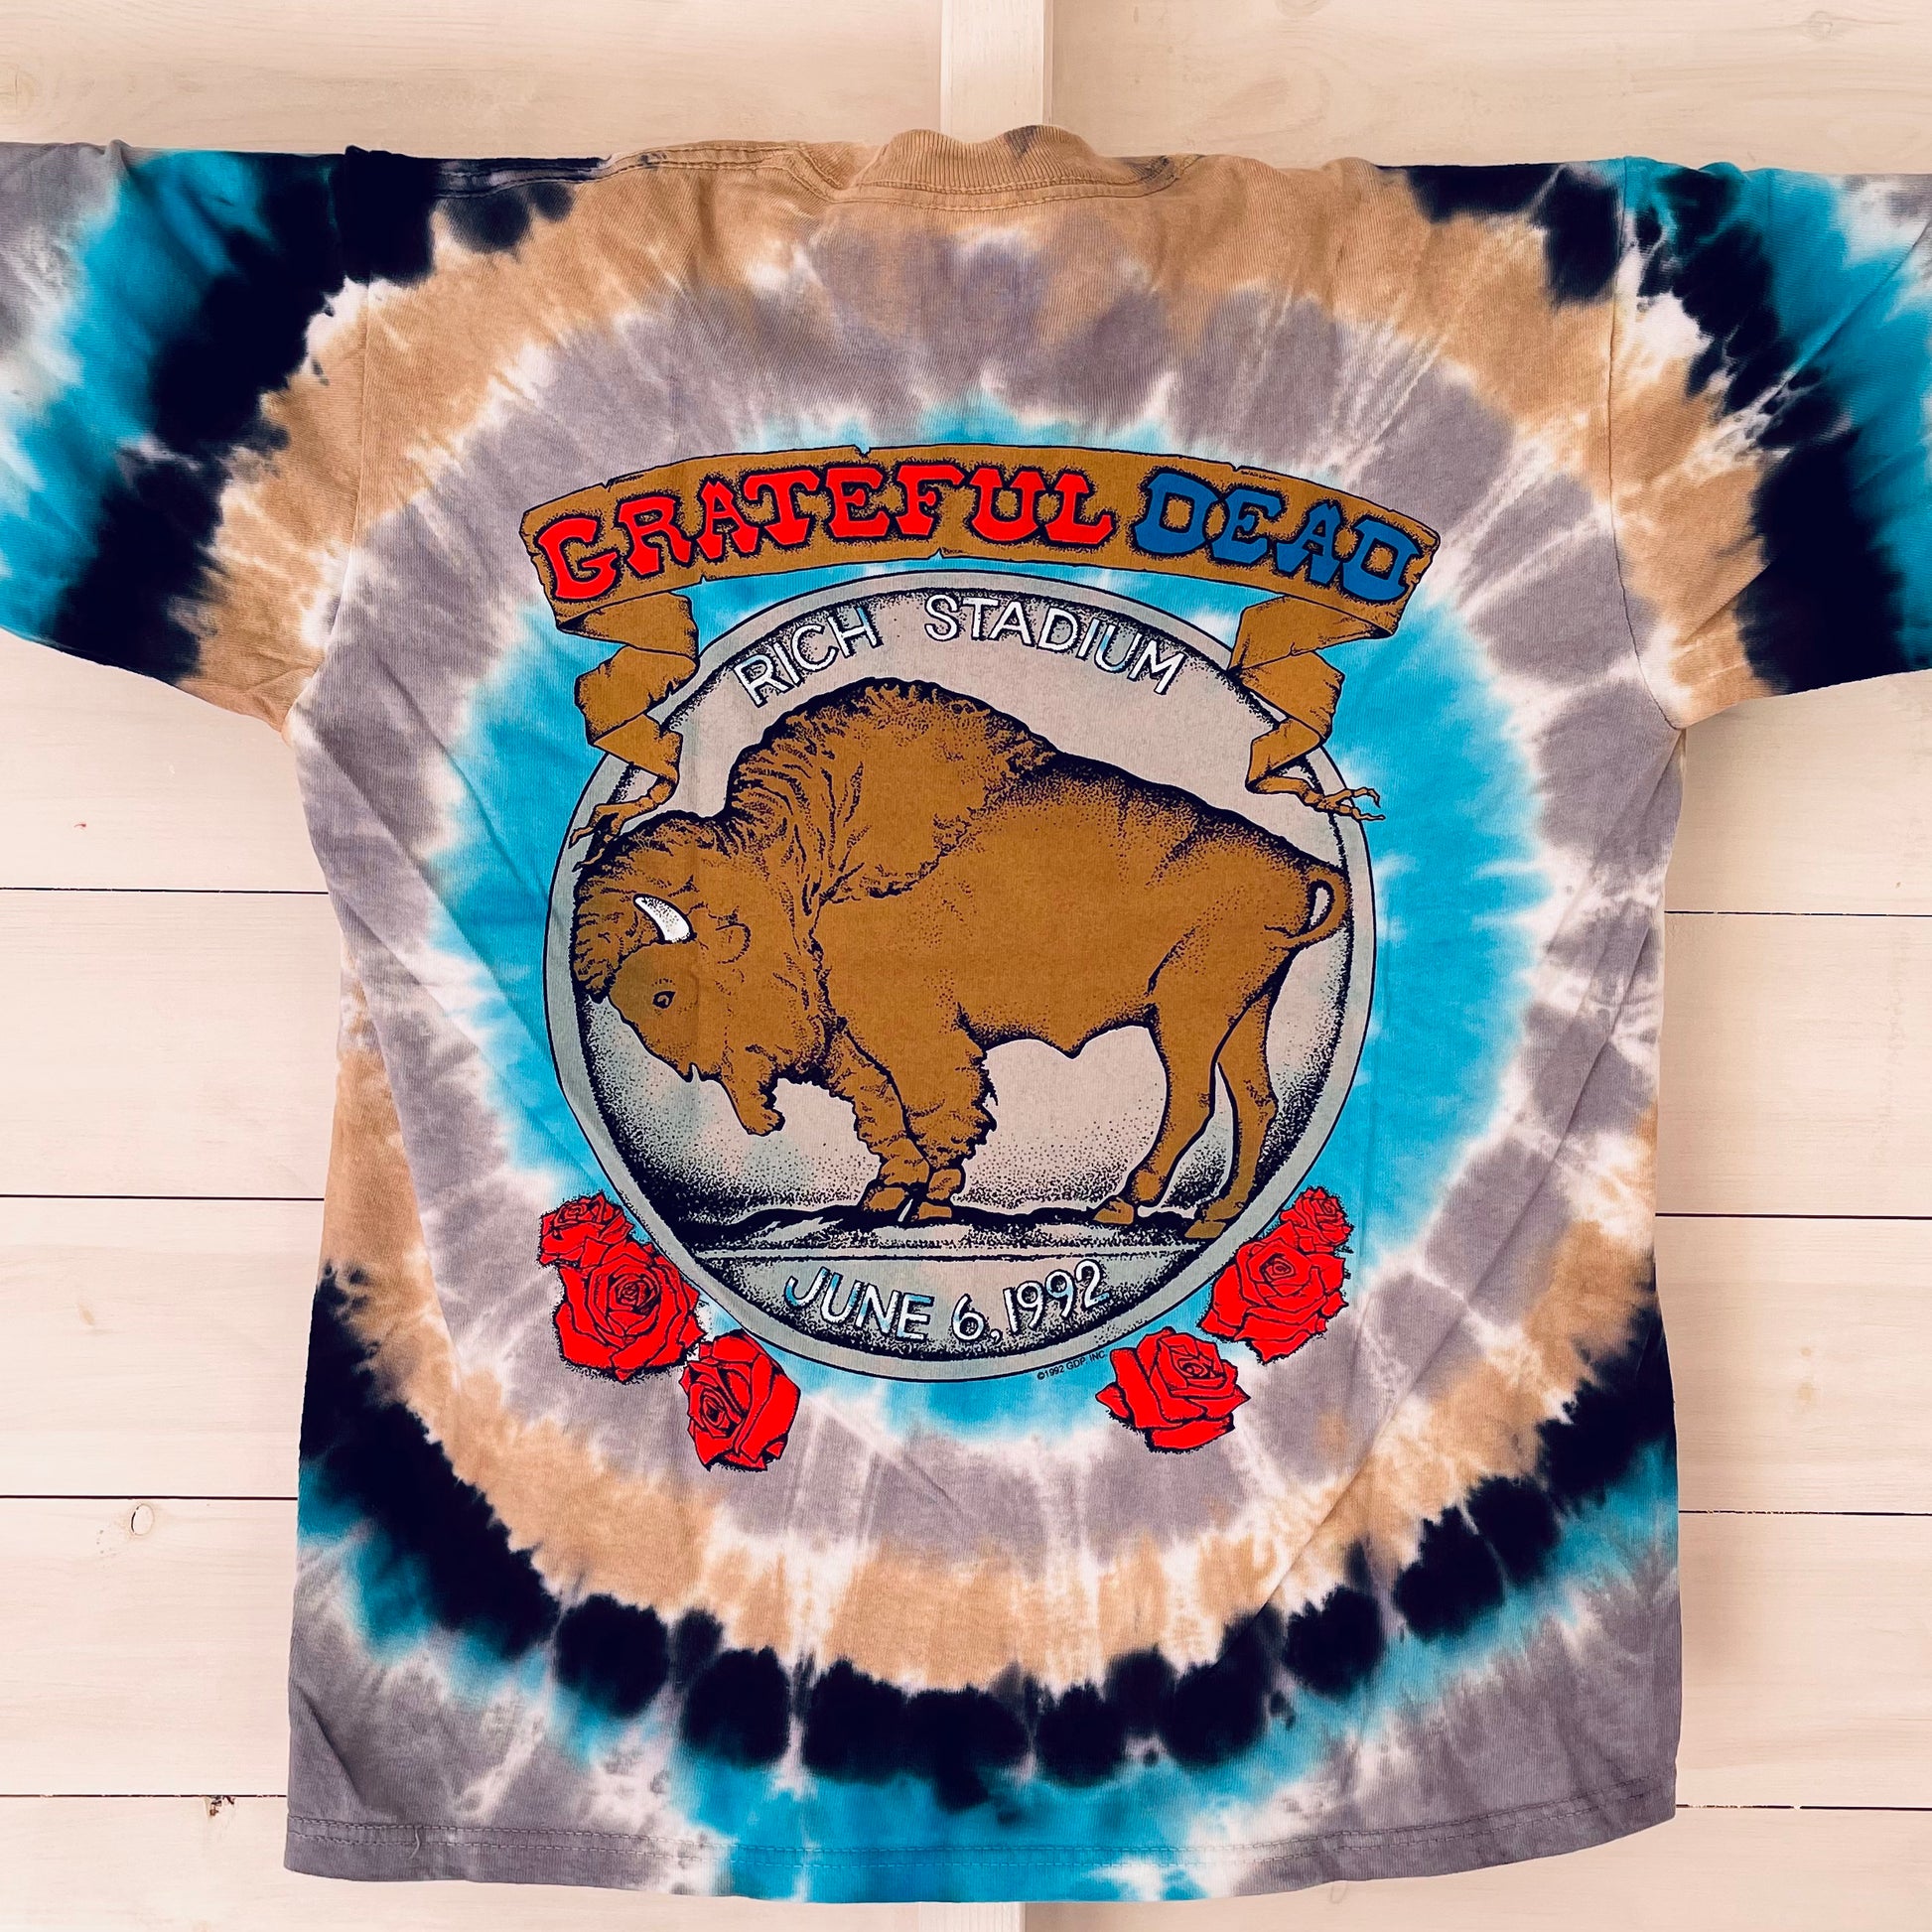 Grateful Dead - Unisex Bertha Frame T-Shirt